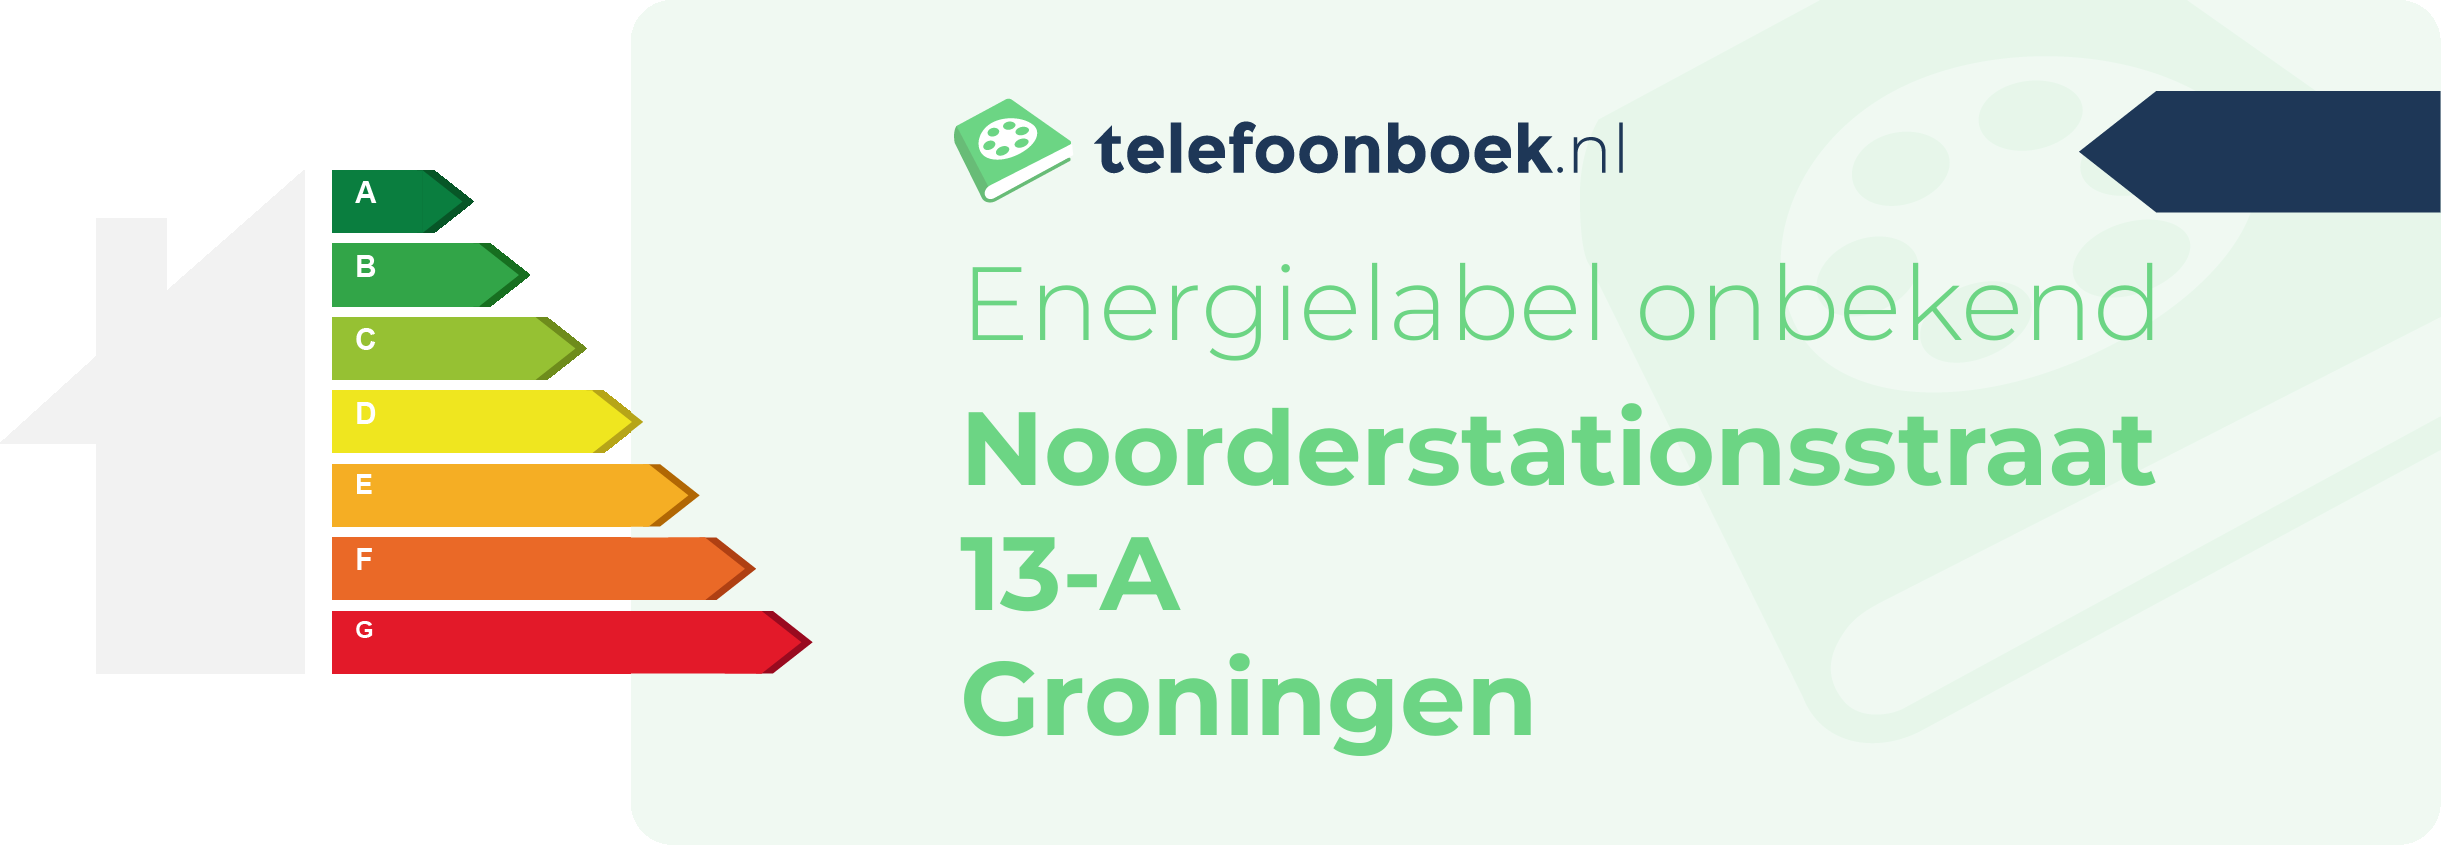 Energielabel Noorderstationsstraat 13-A Groningen